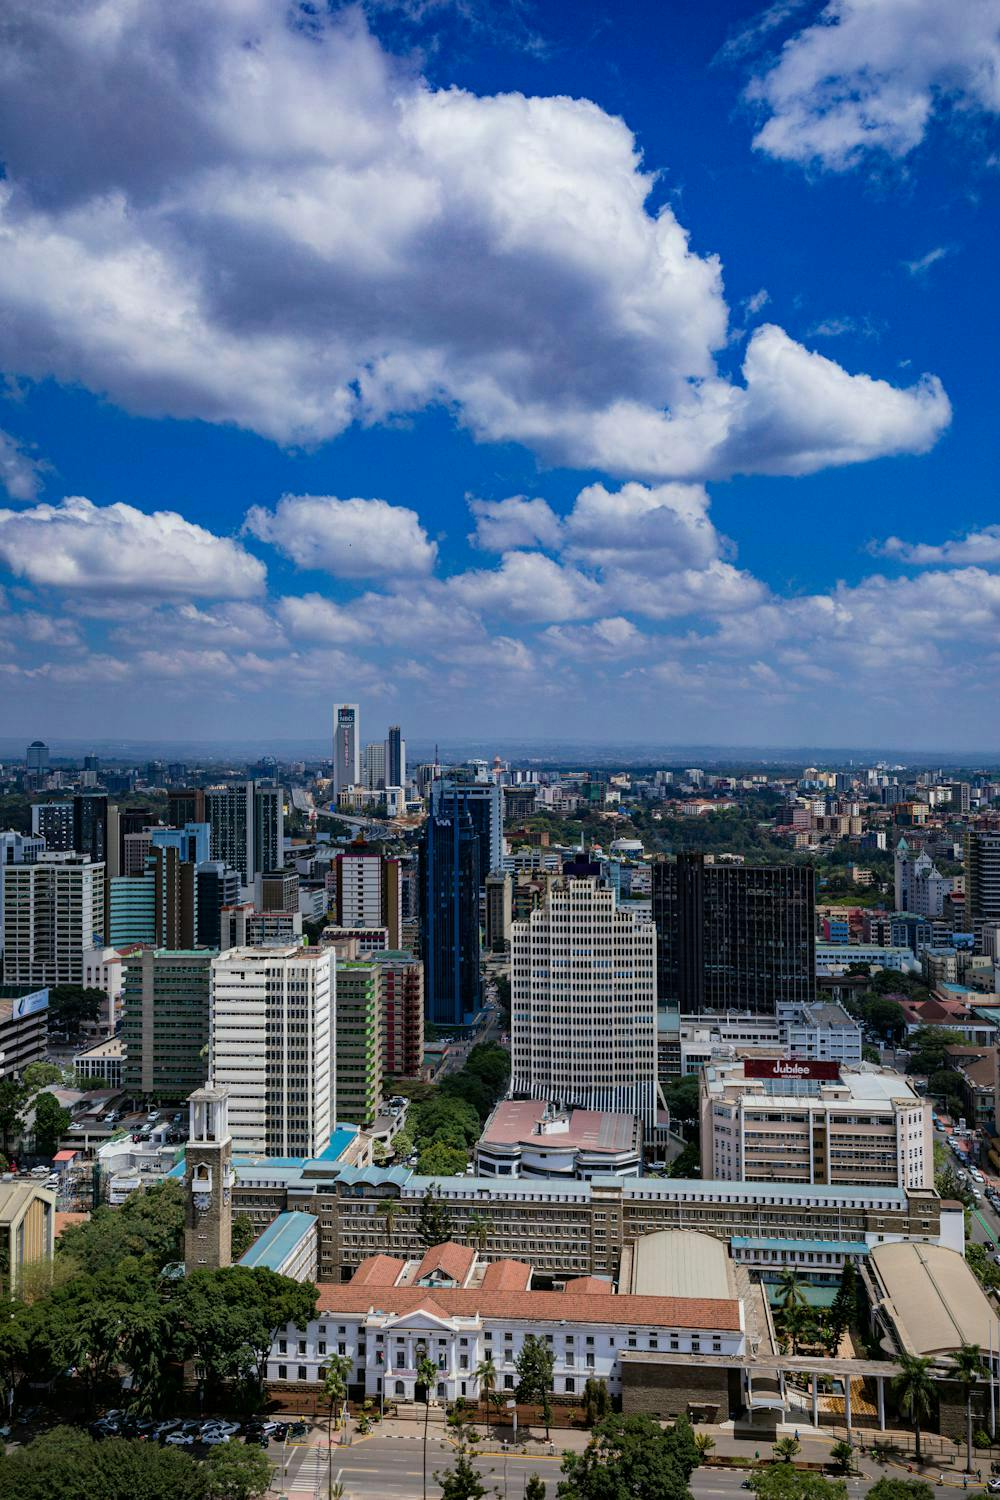 View of Nairobi